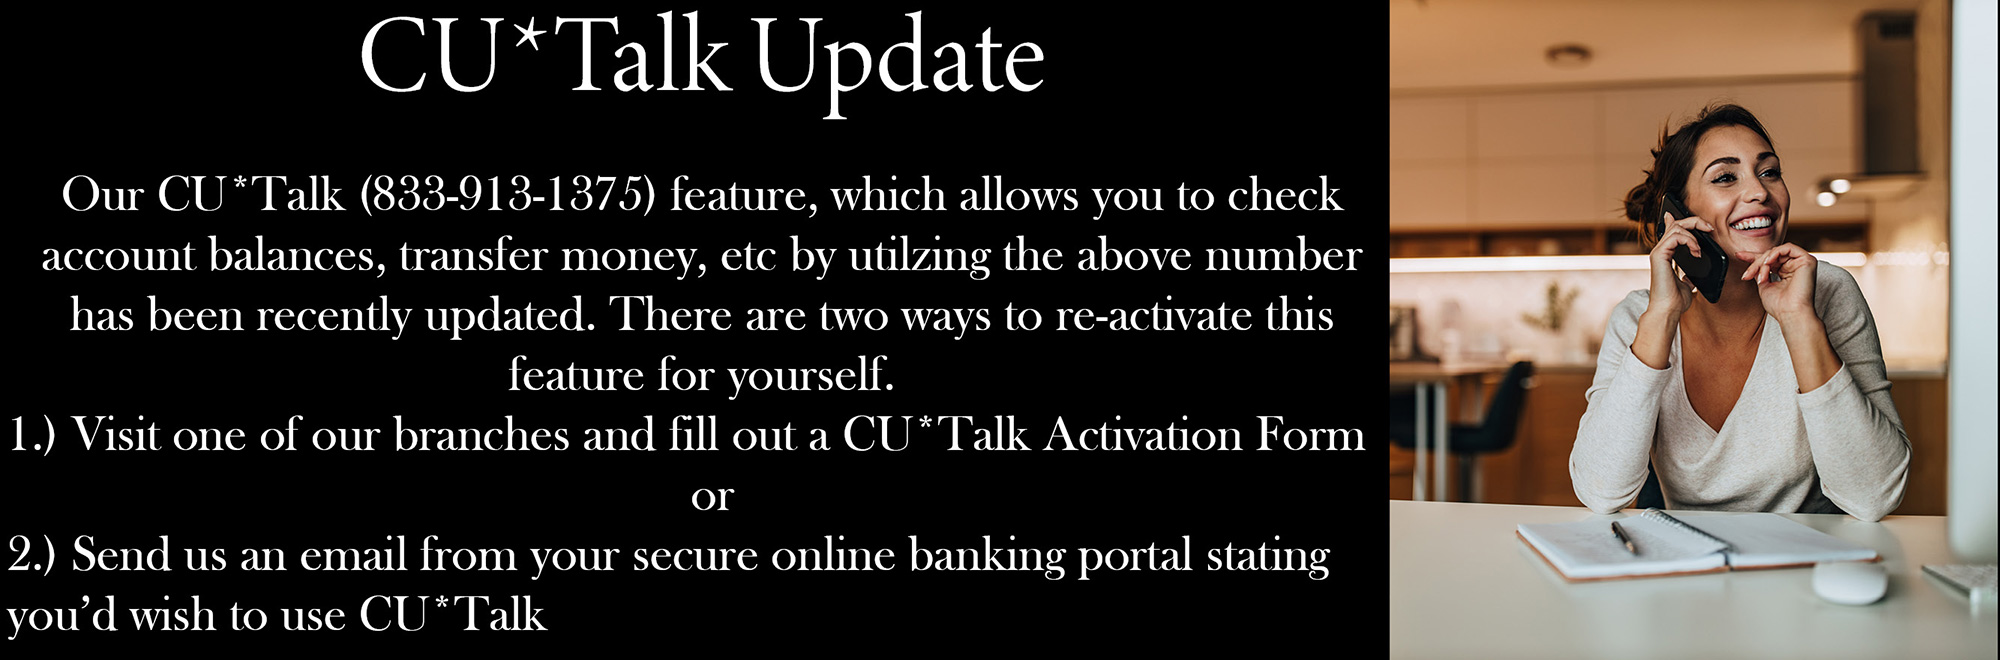 CU Talk update